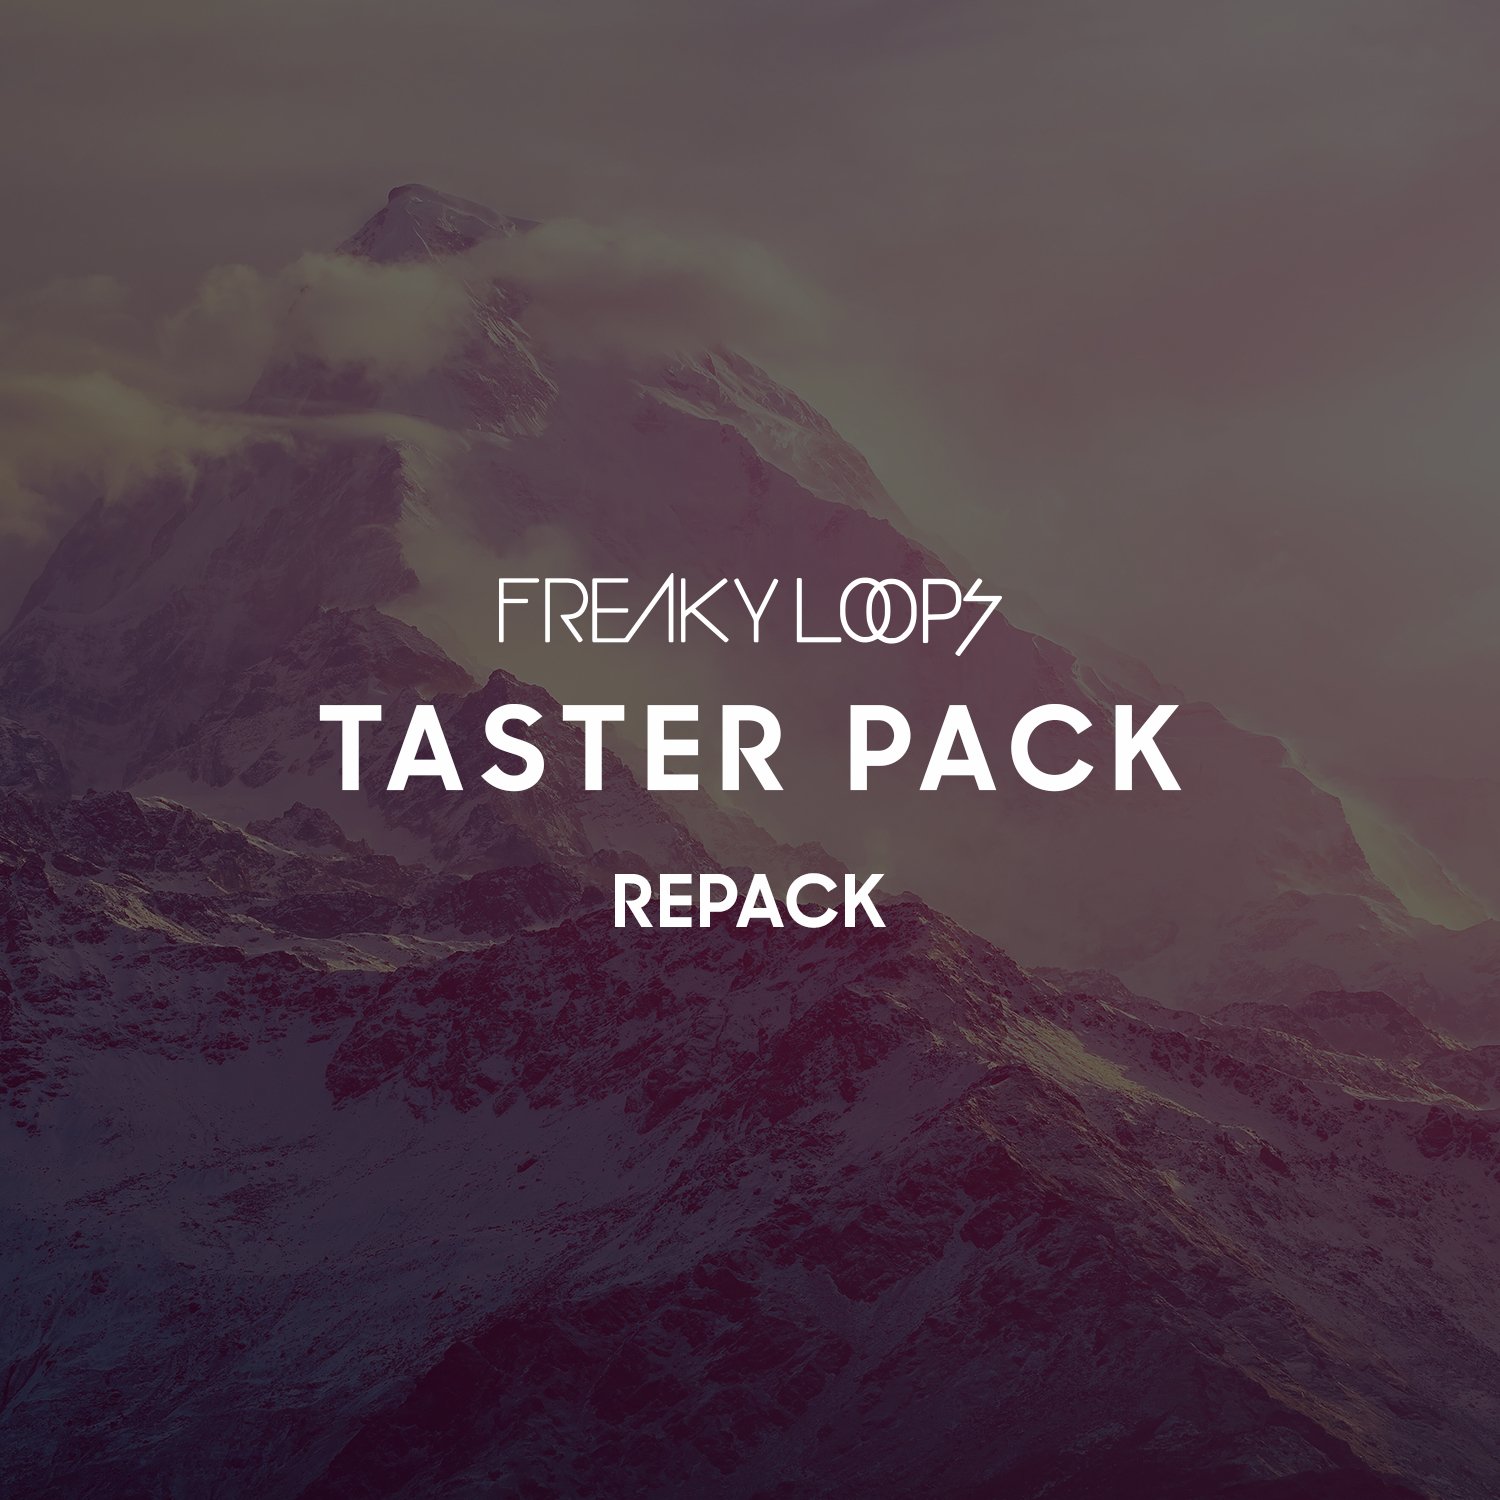 Freaky Loops Taster Pack